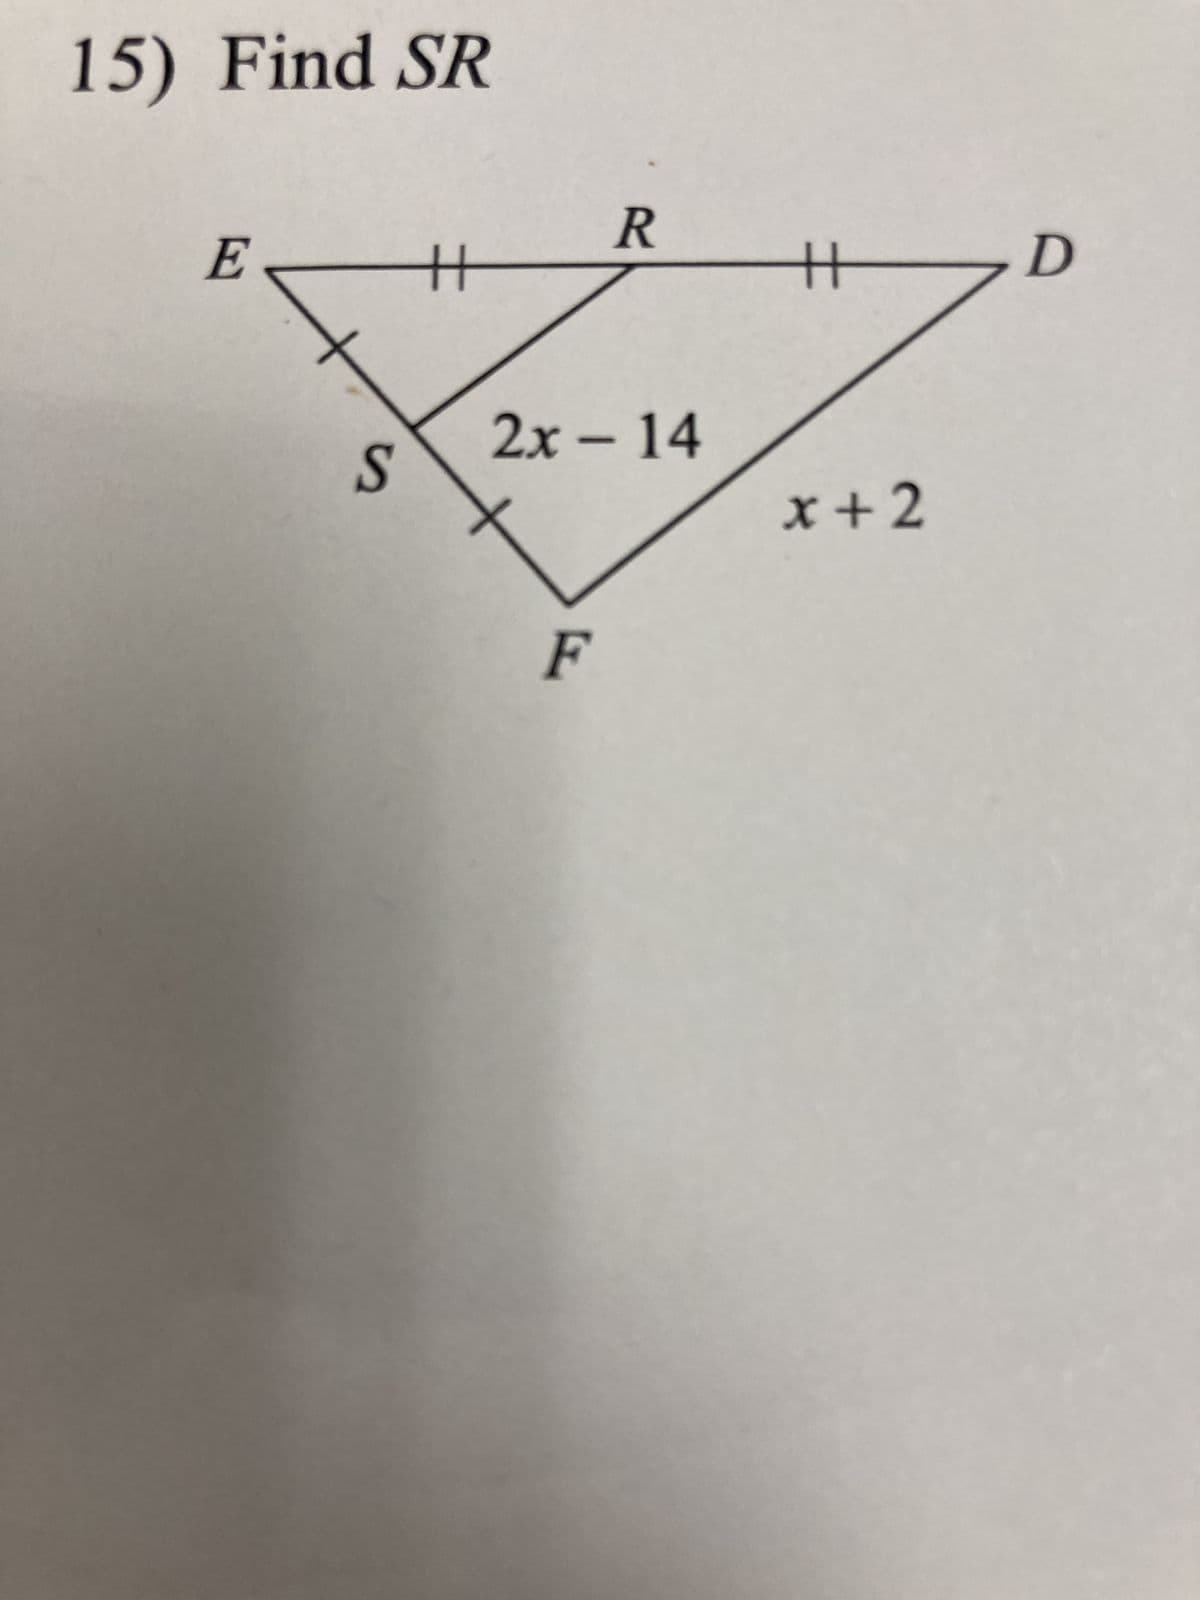 15) Find SR
E
S
H
R
2x - 14
F
艹
x+2
D